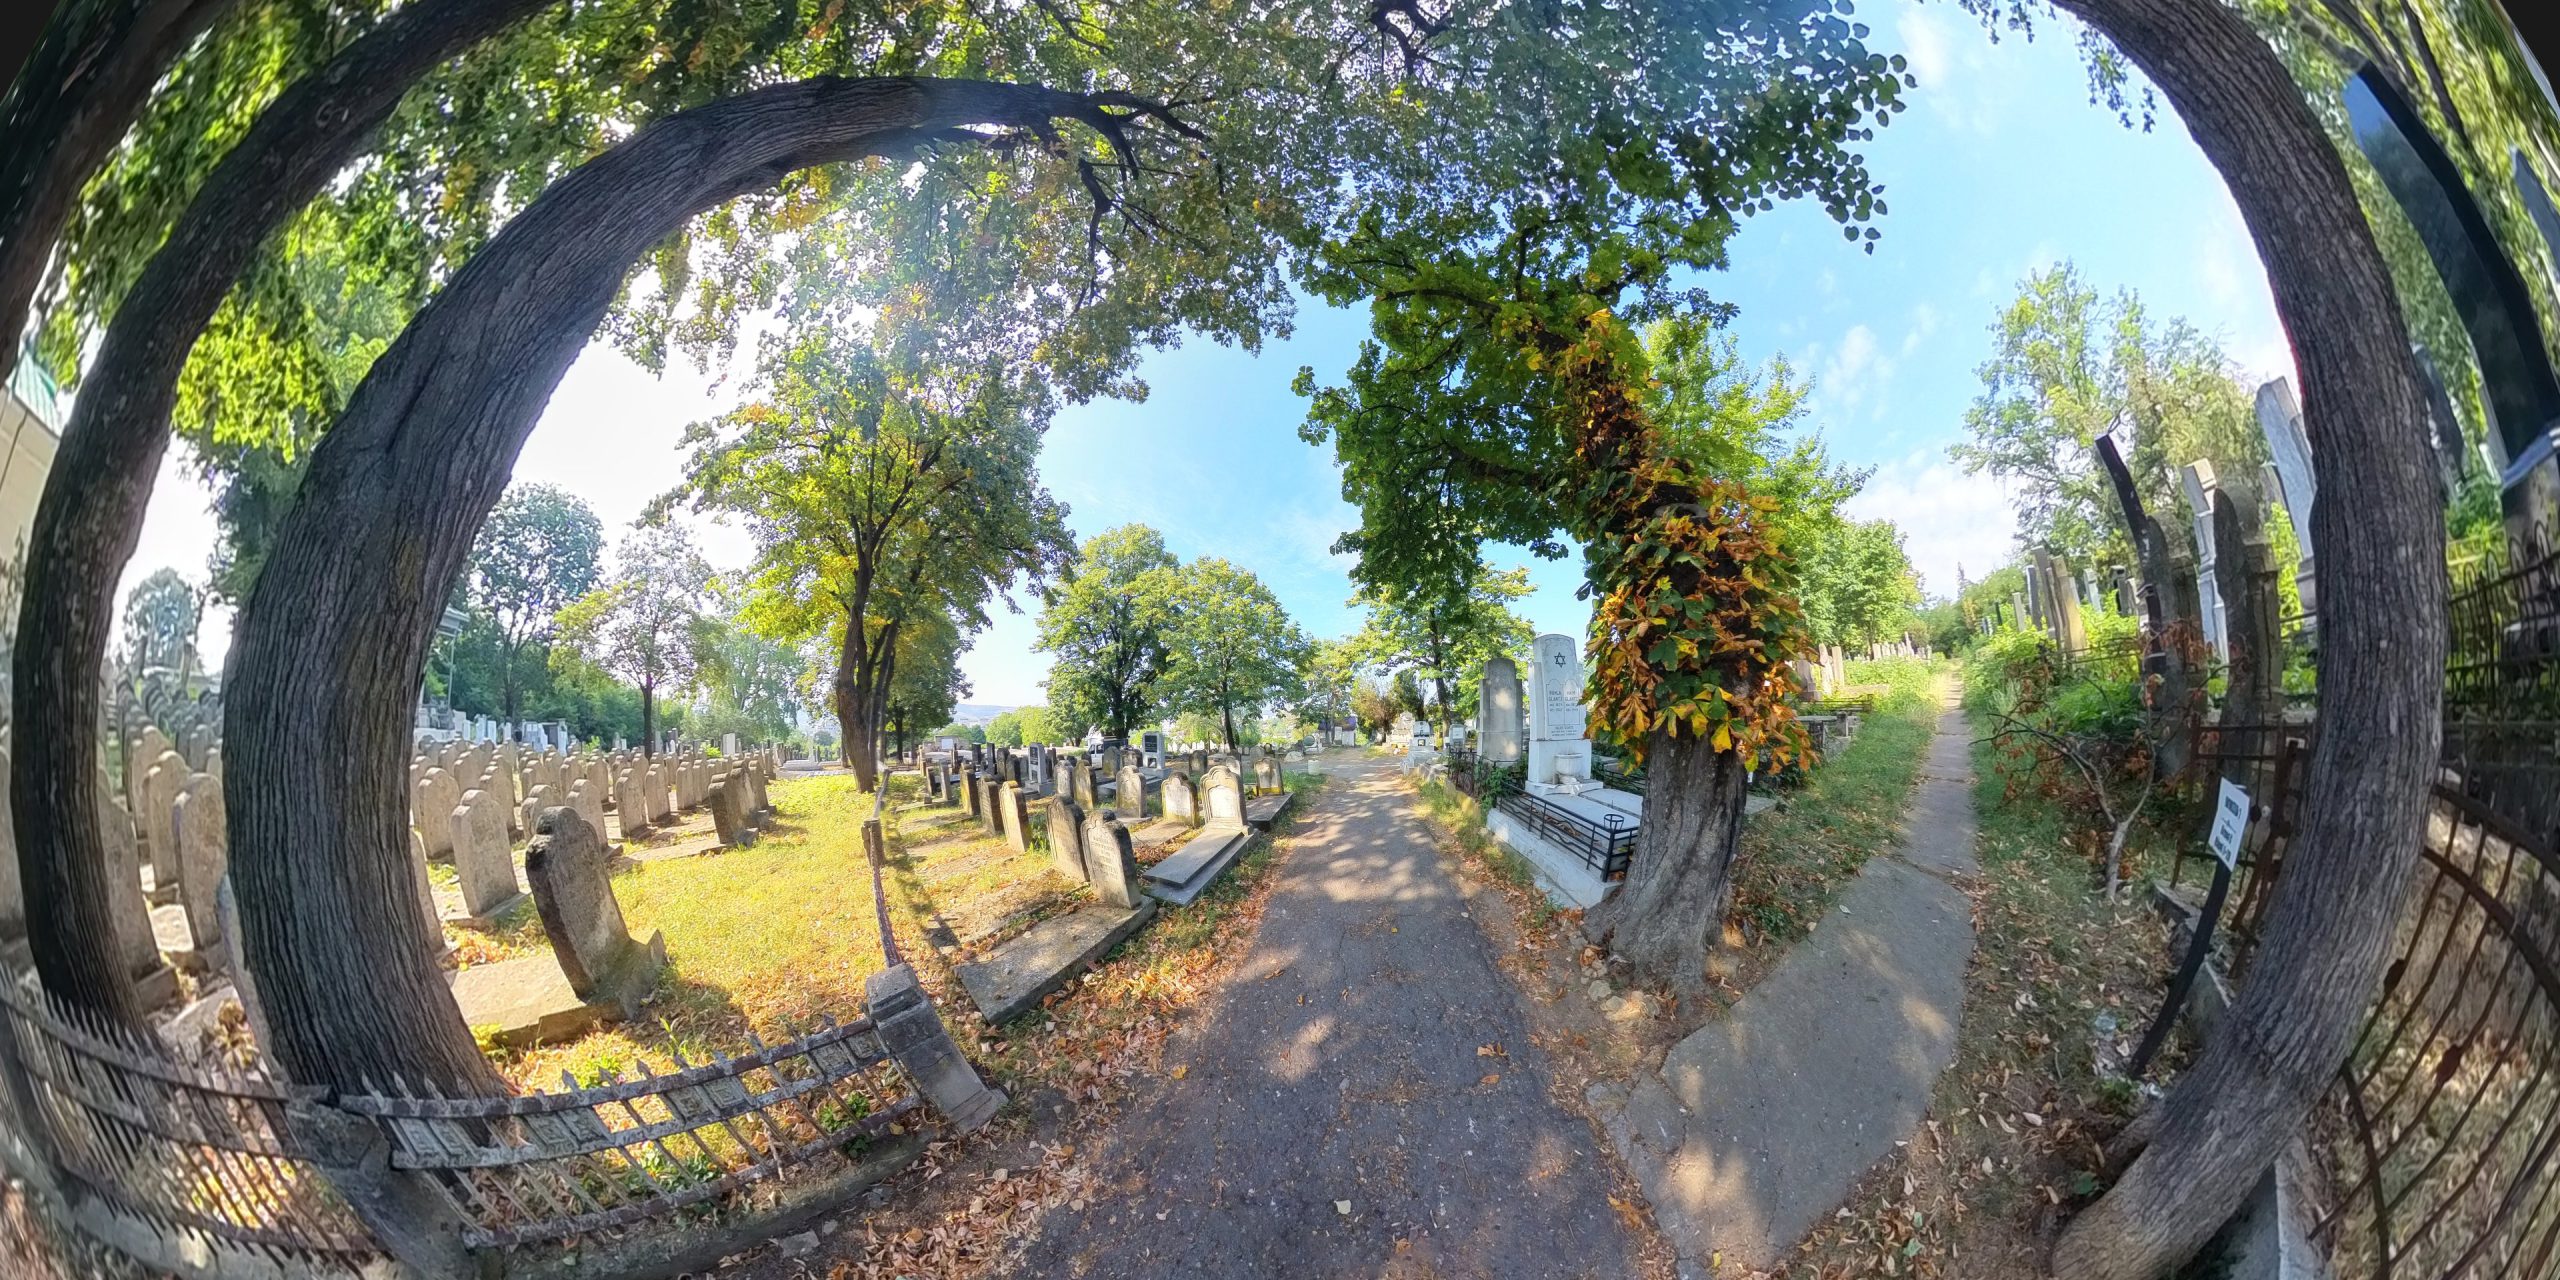  Iași: primul tur virtual al unui cimitir evreiesc din România